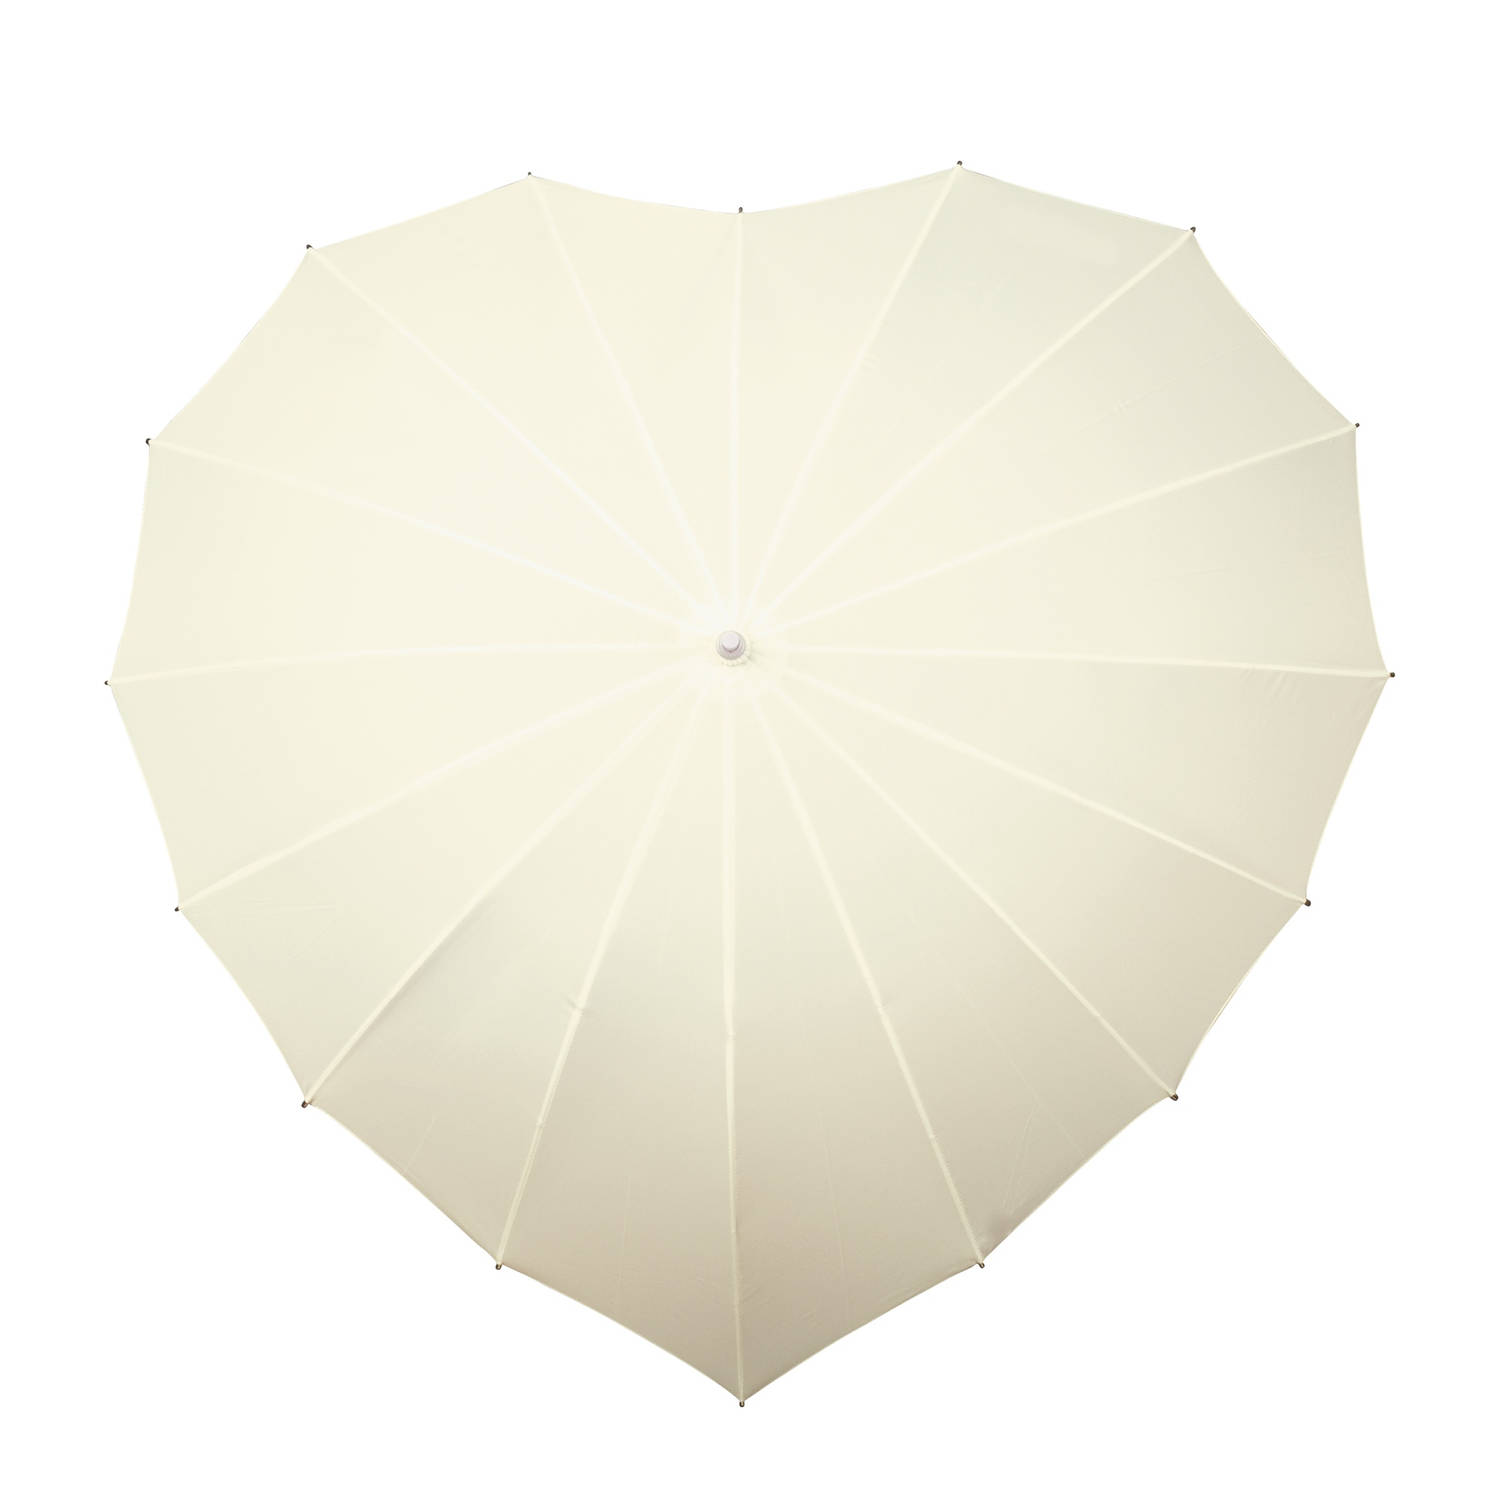 Verplaatsing geeuwen Het strand Impliva paraplu hartvormig handopening 110 cm gebroken wit | Blokker